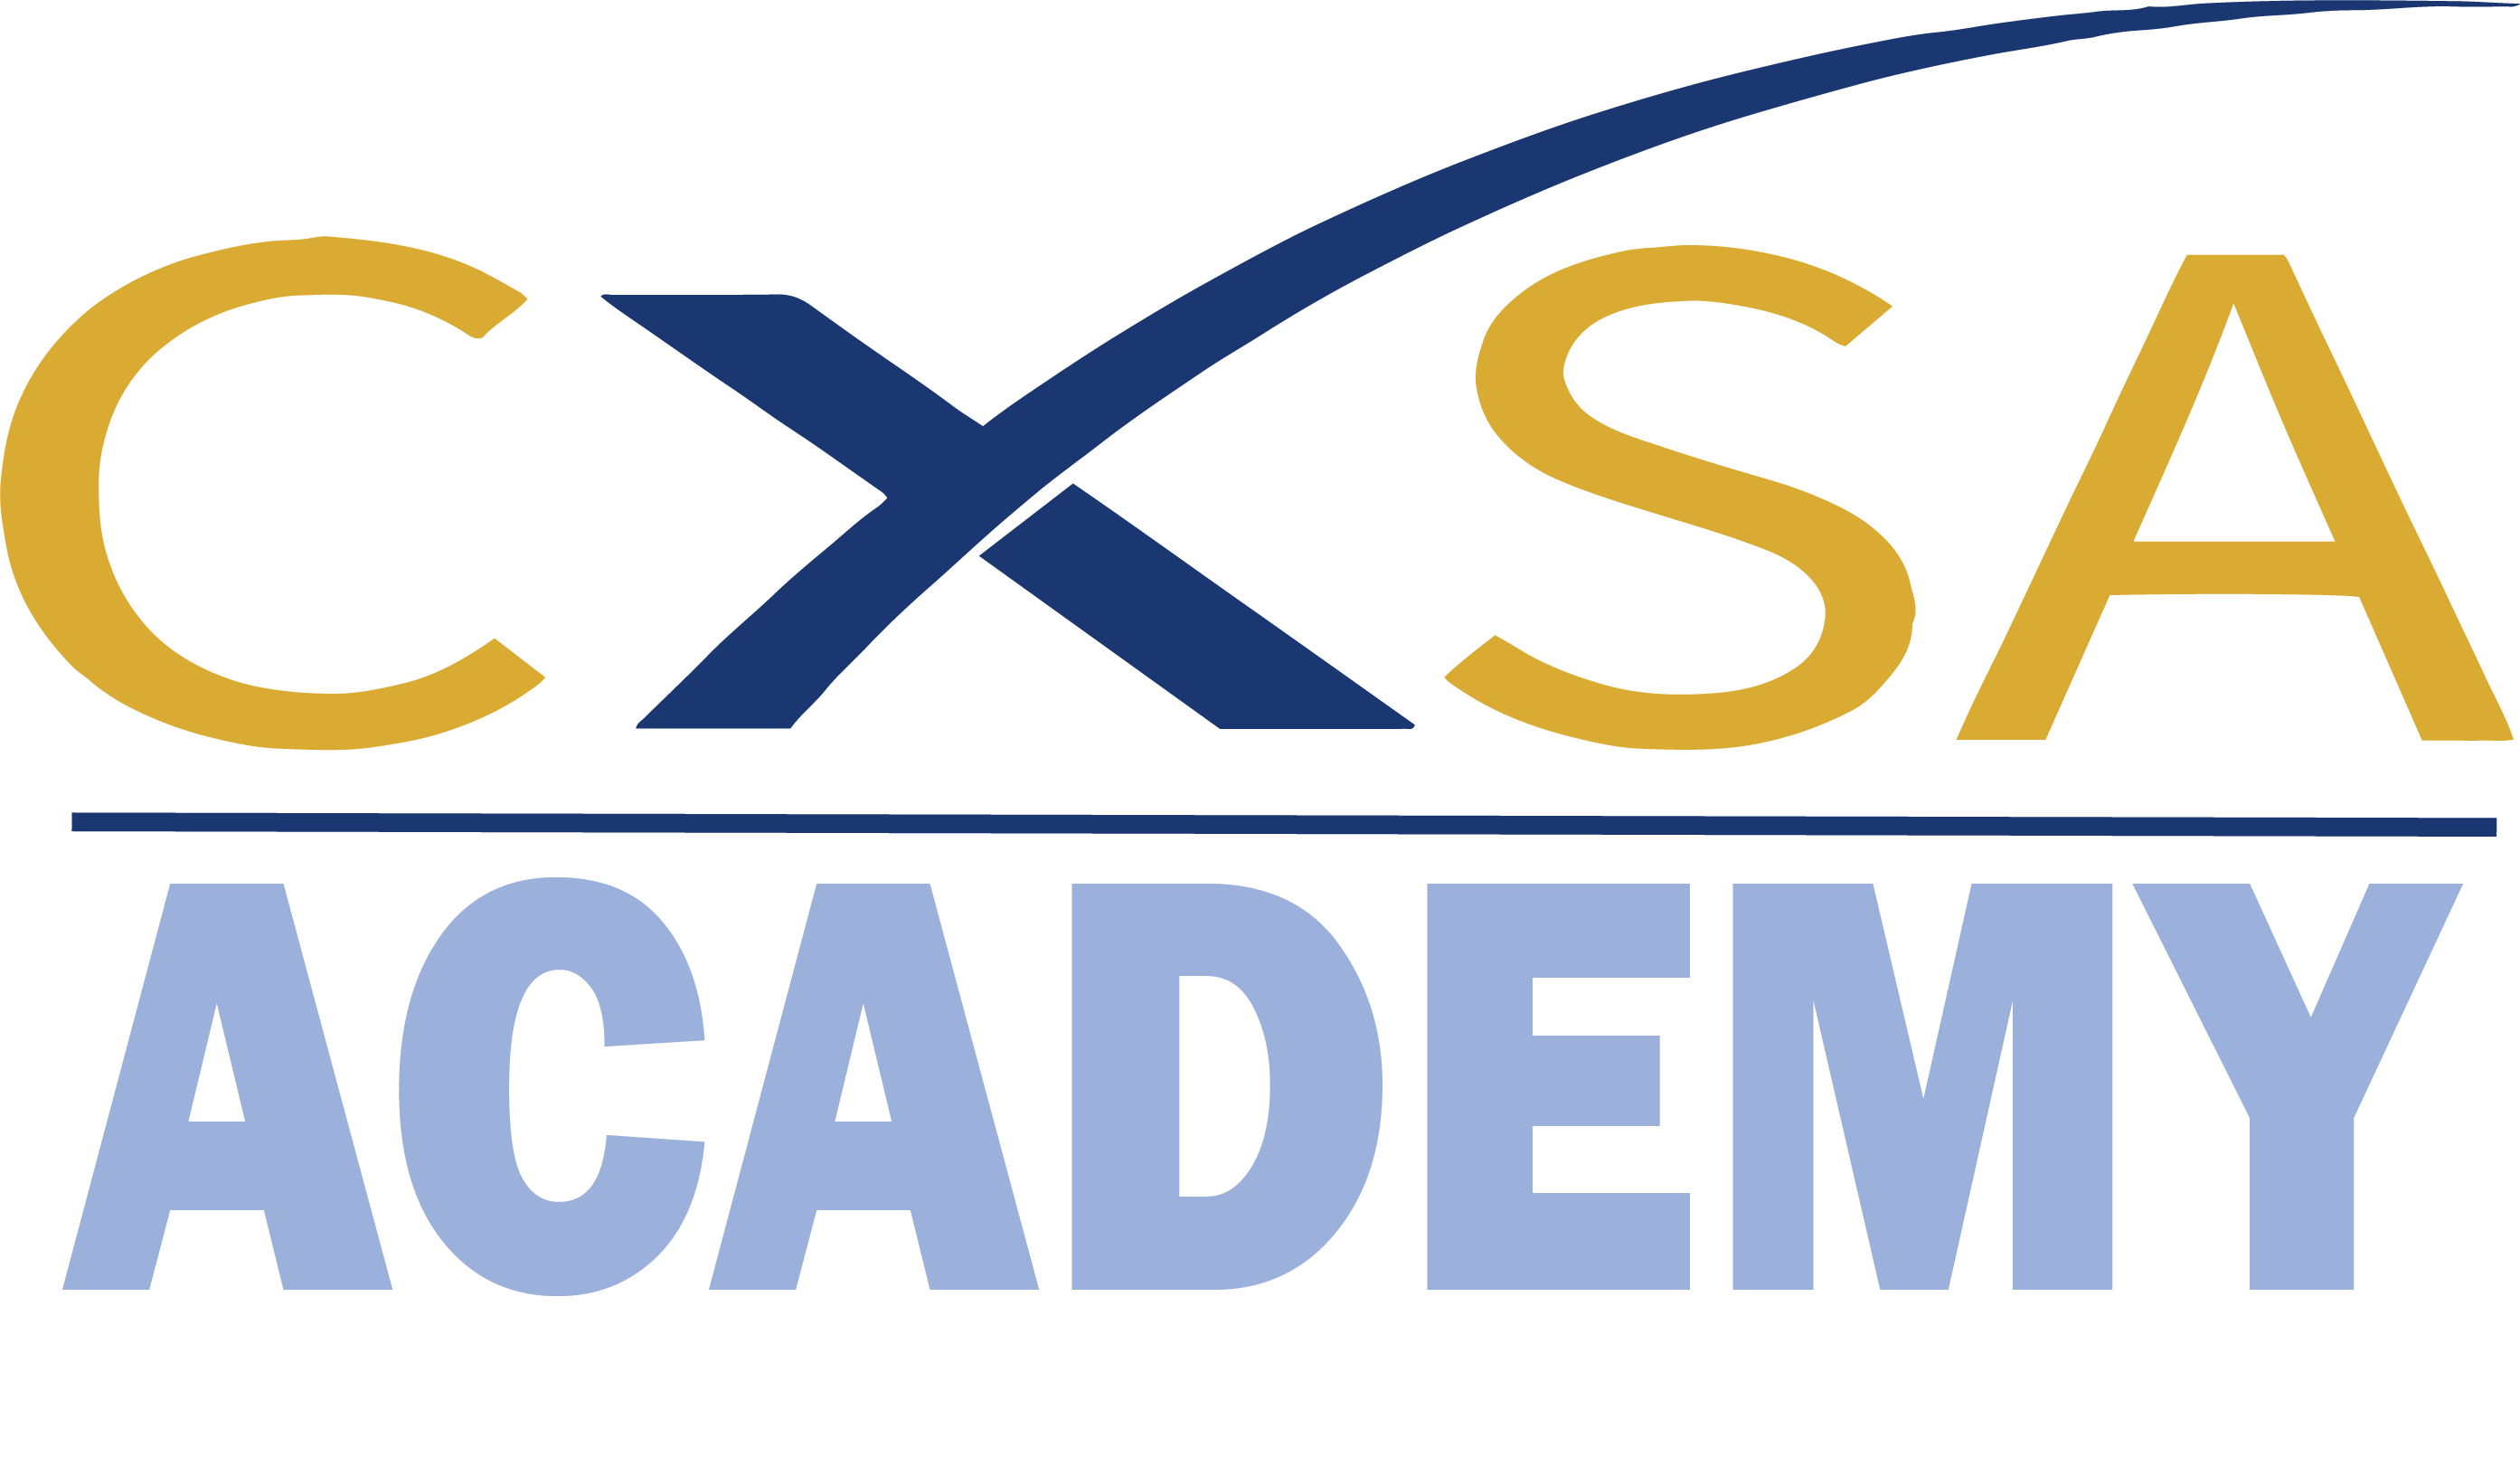 CXSA Academy